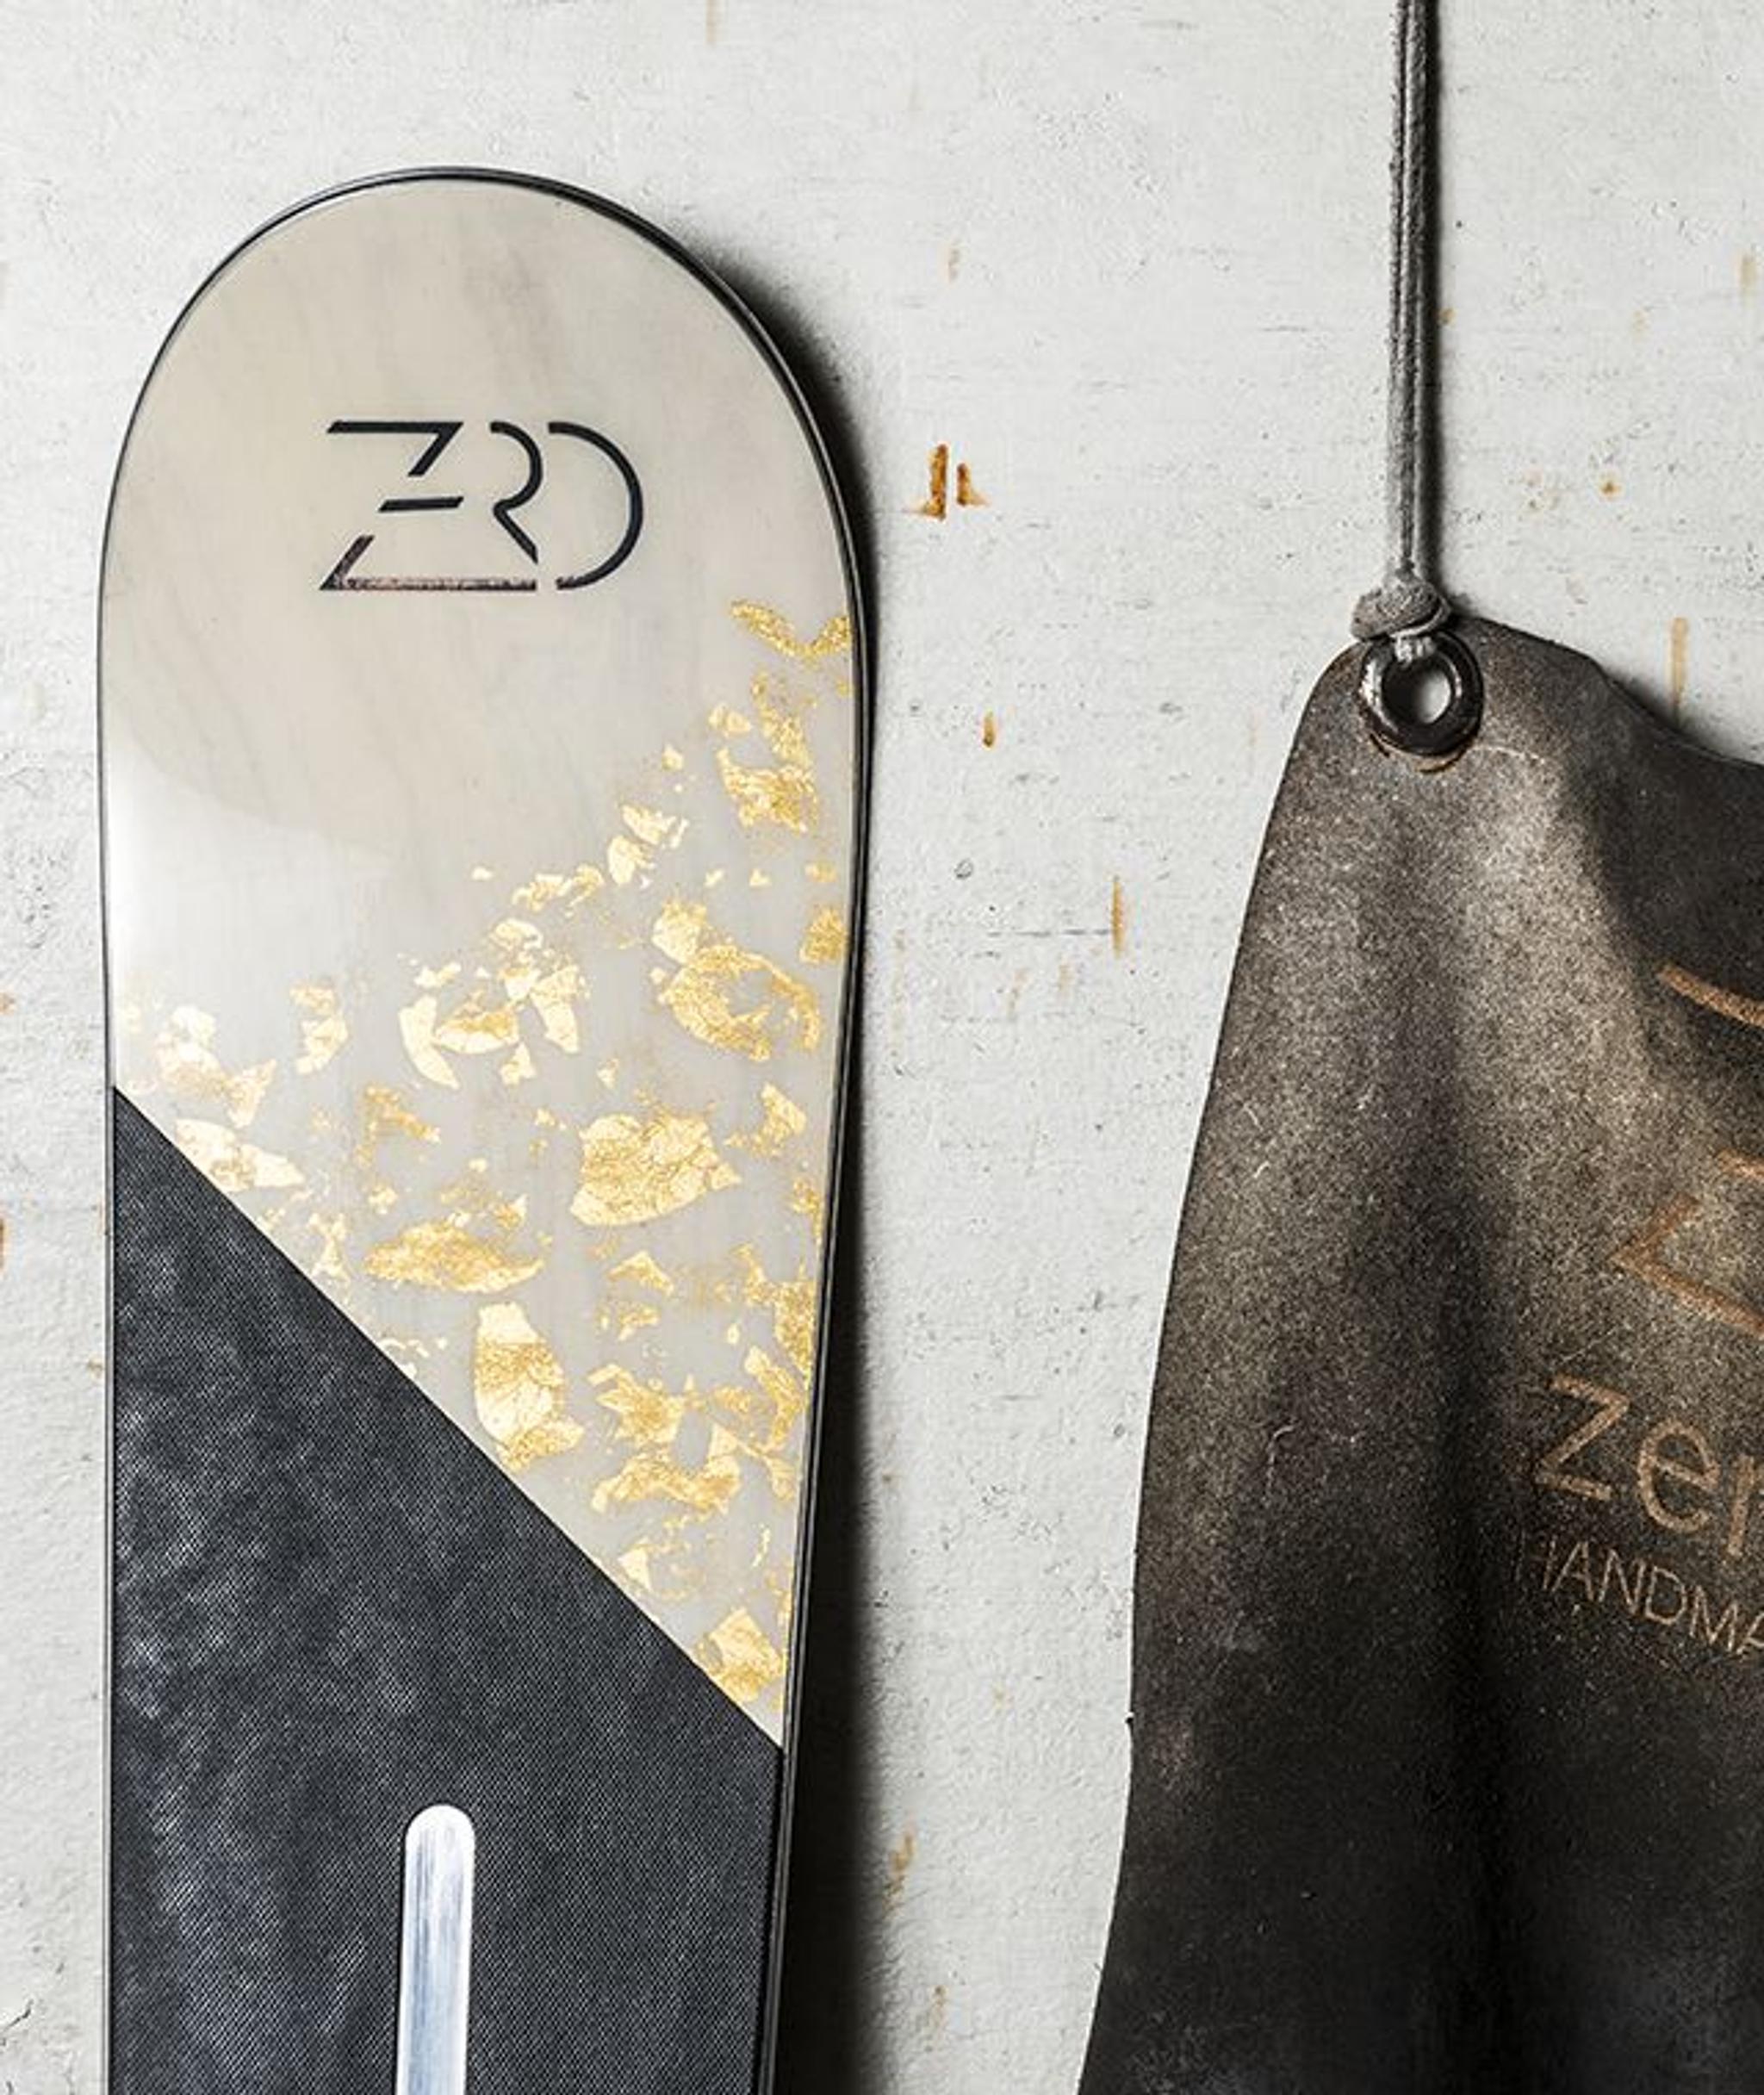 Zeno Skis by Zero